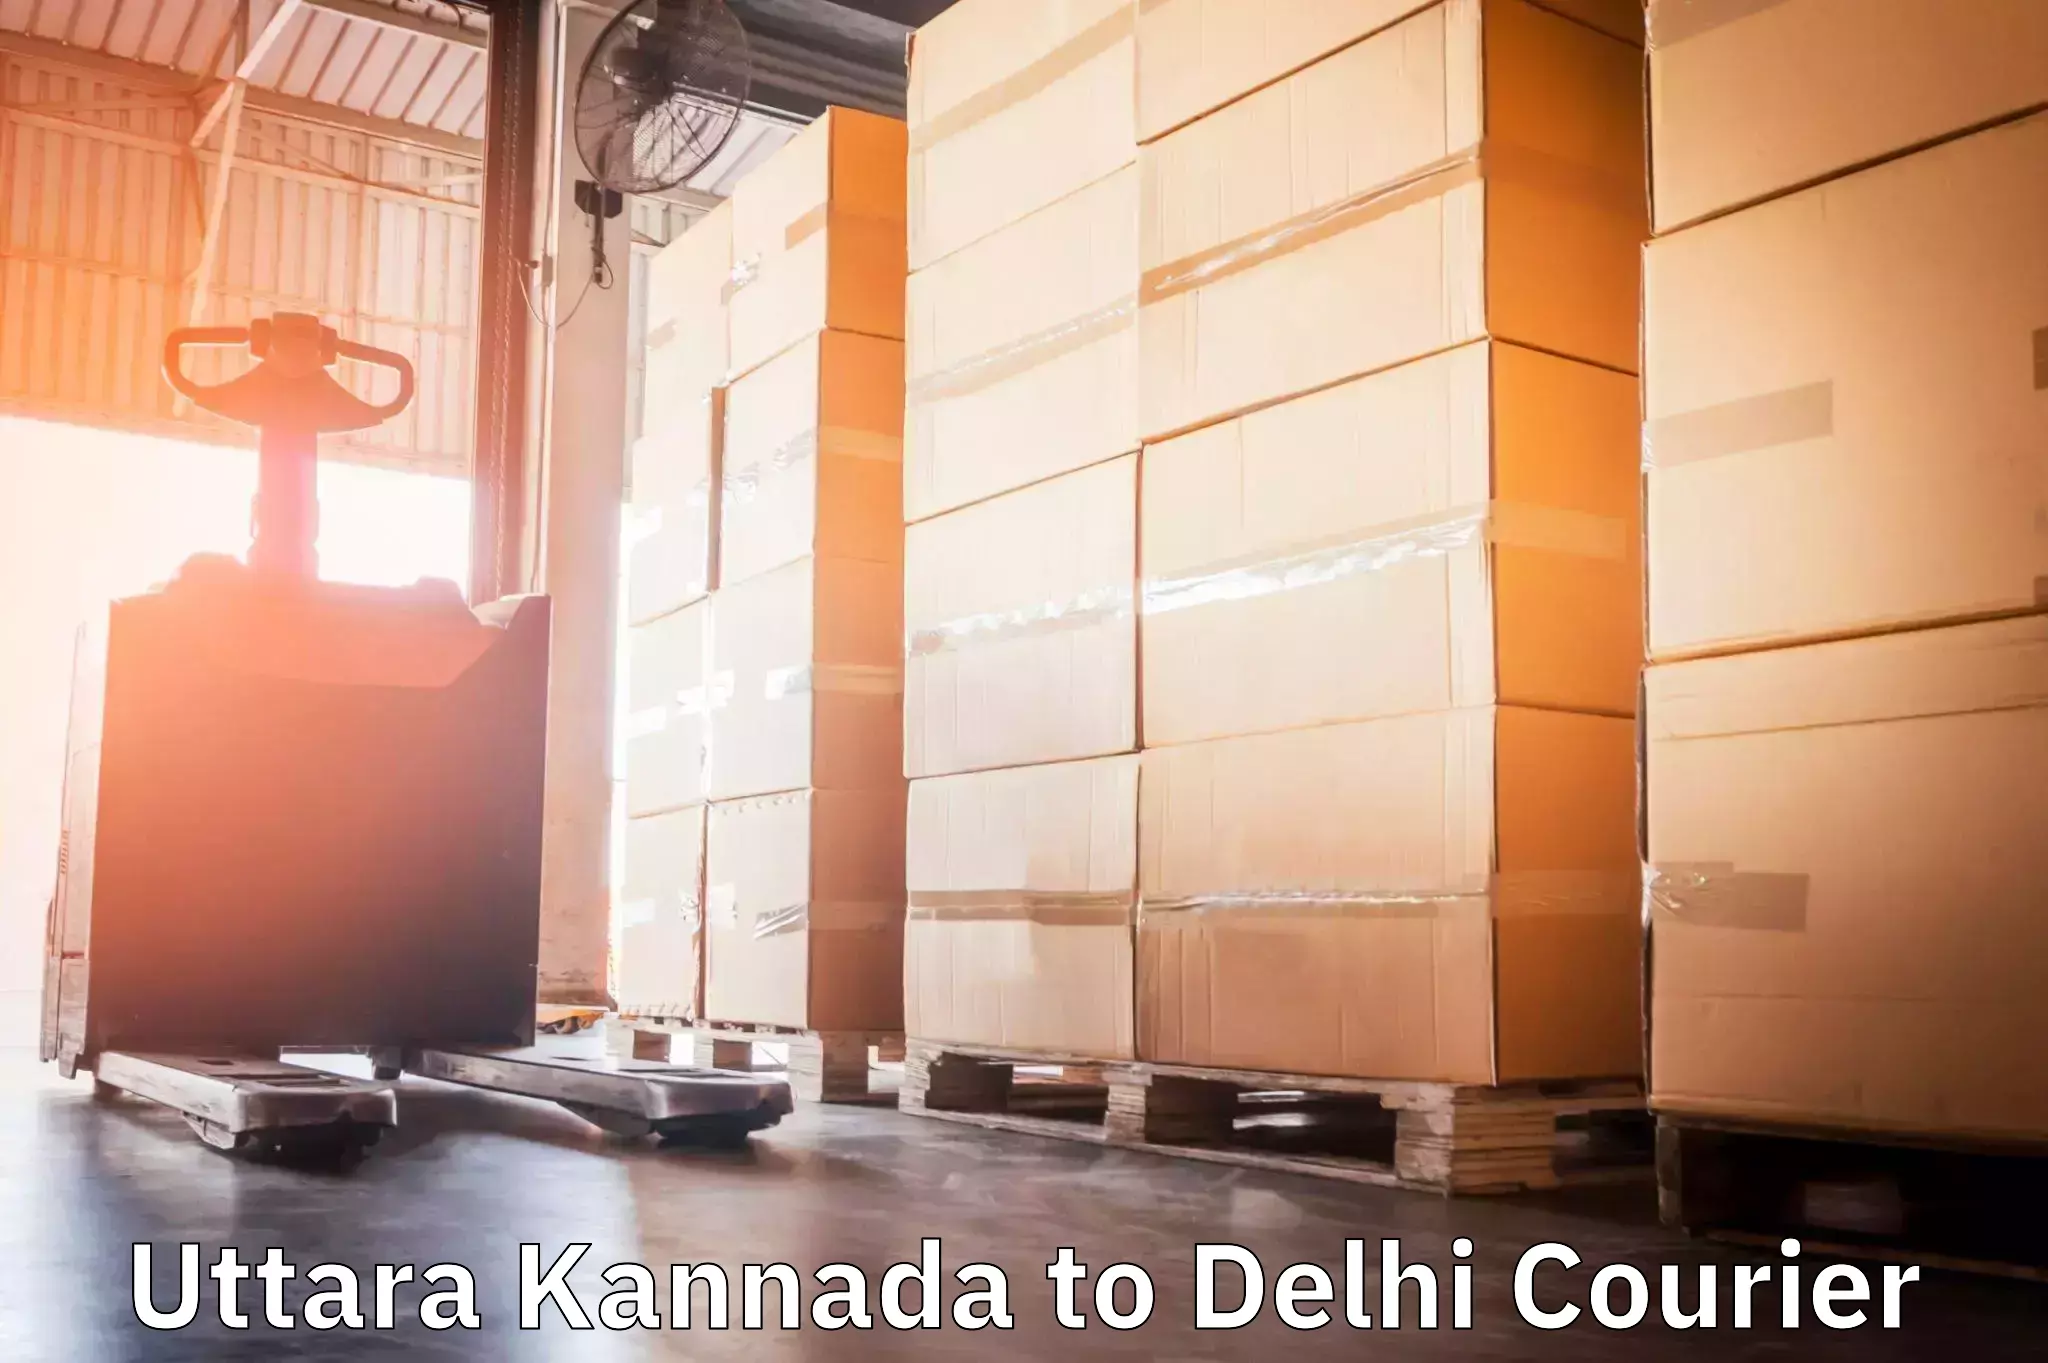 Seamless shipping experience Uttara Kannada to NIT Delhi